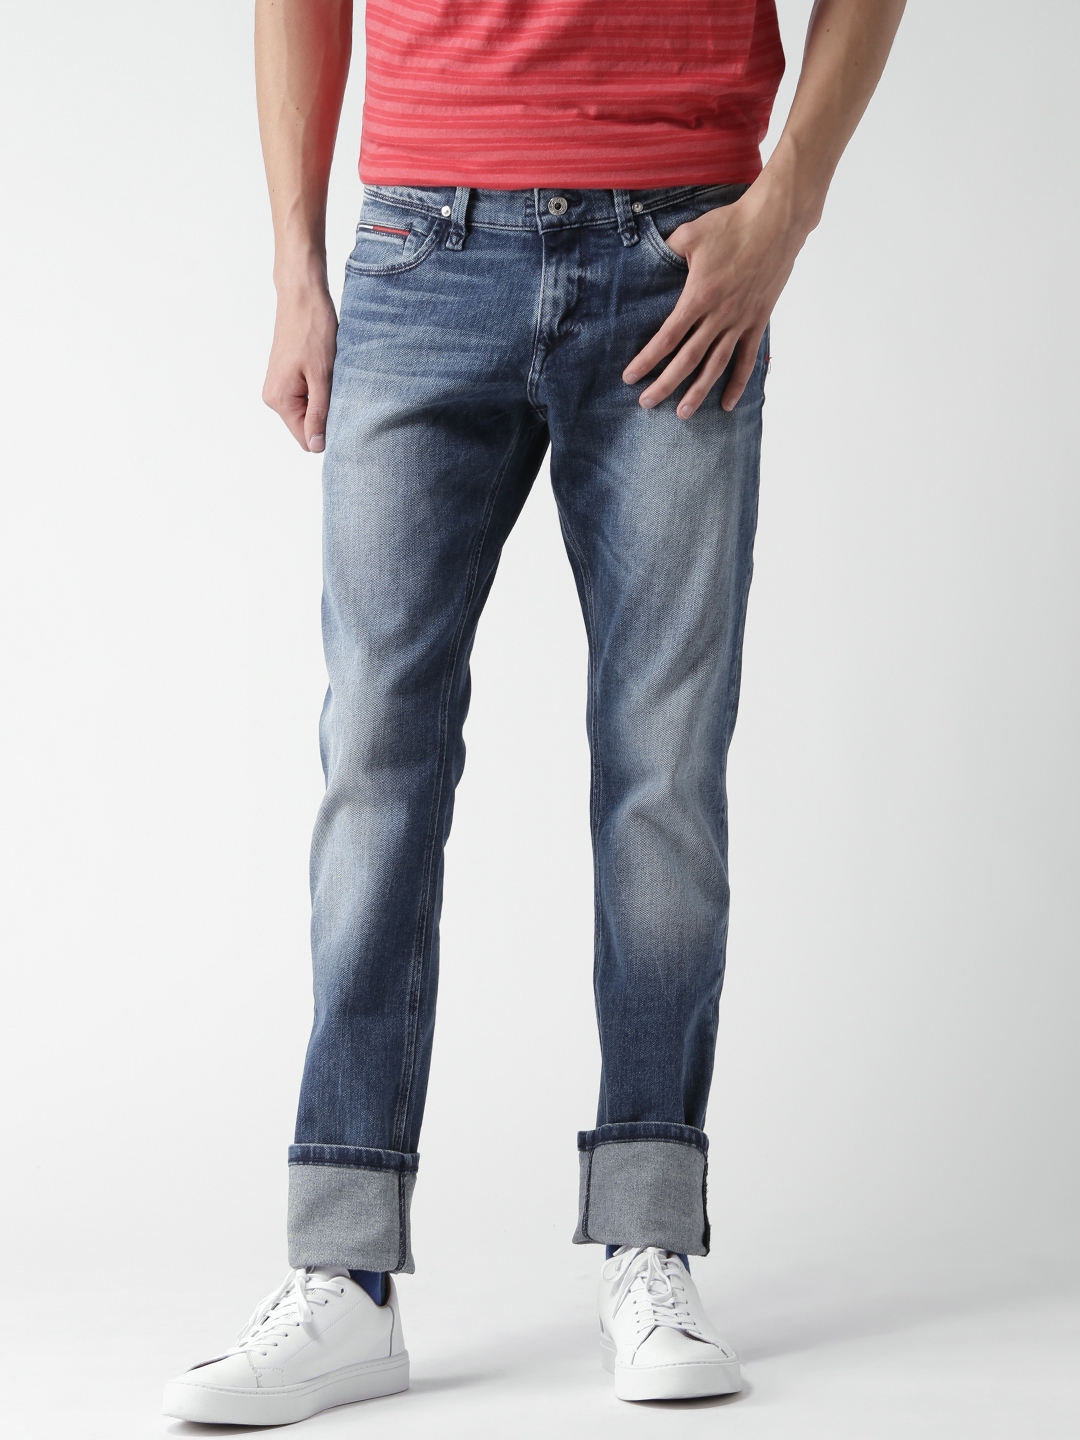 Buy Tommy Hilfiger Blue Skinny Sidney Fit Stretchable Jeans - Jeans Men 1851307 | Myntra